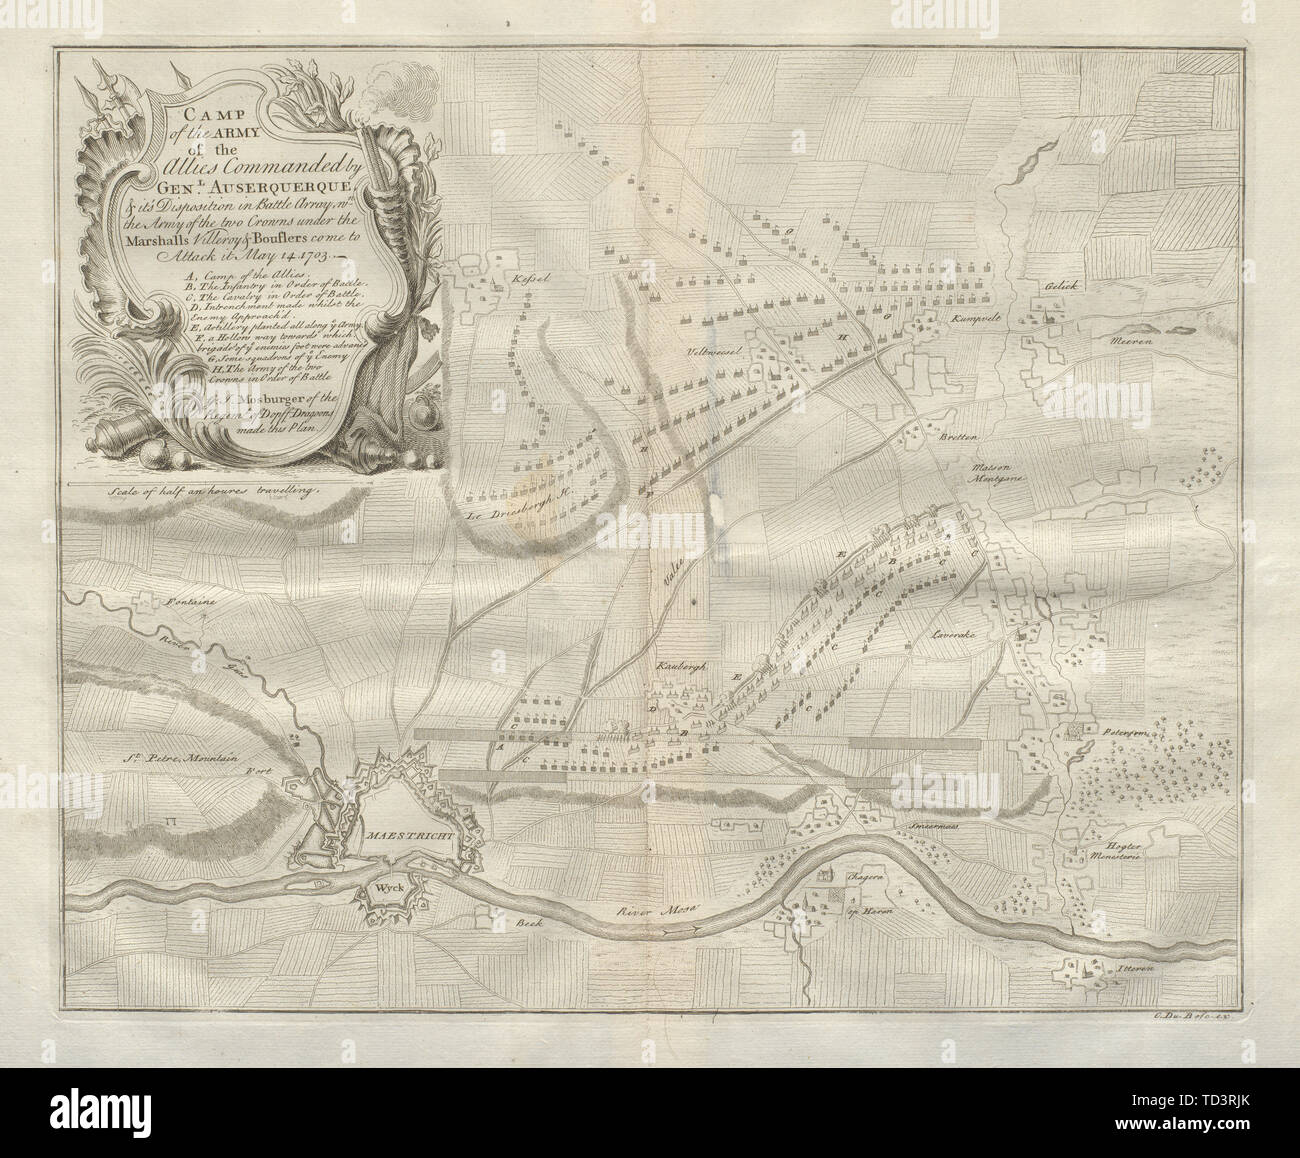 Allied camp Maggio 14, 1703. Maastricht, Paesi Bassi. DU BOSC 1736 mappa vecchia Foto Stock